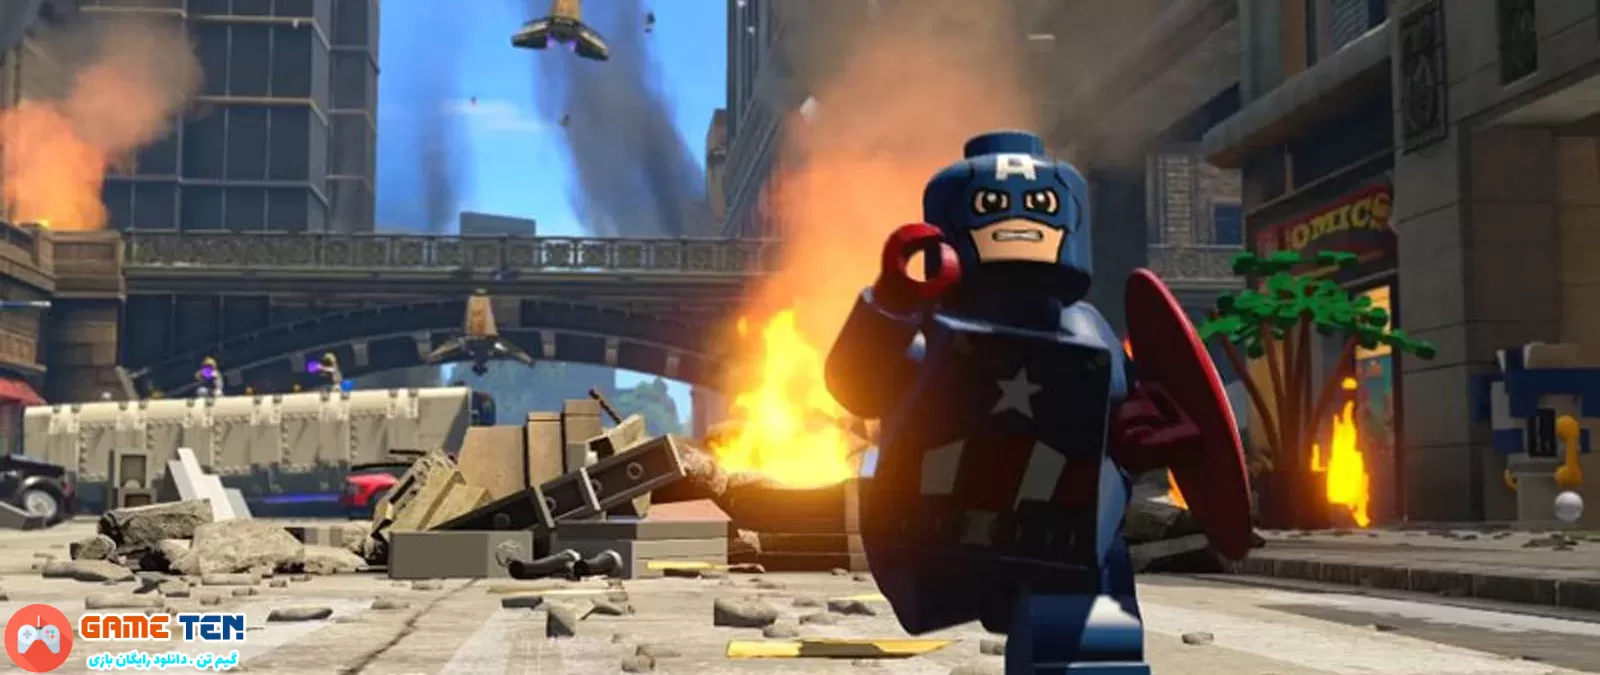 خرید ارزان بازی Lego Marvel’s Avengers برای PS4